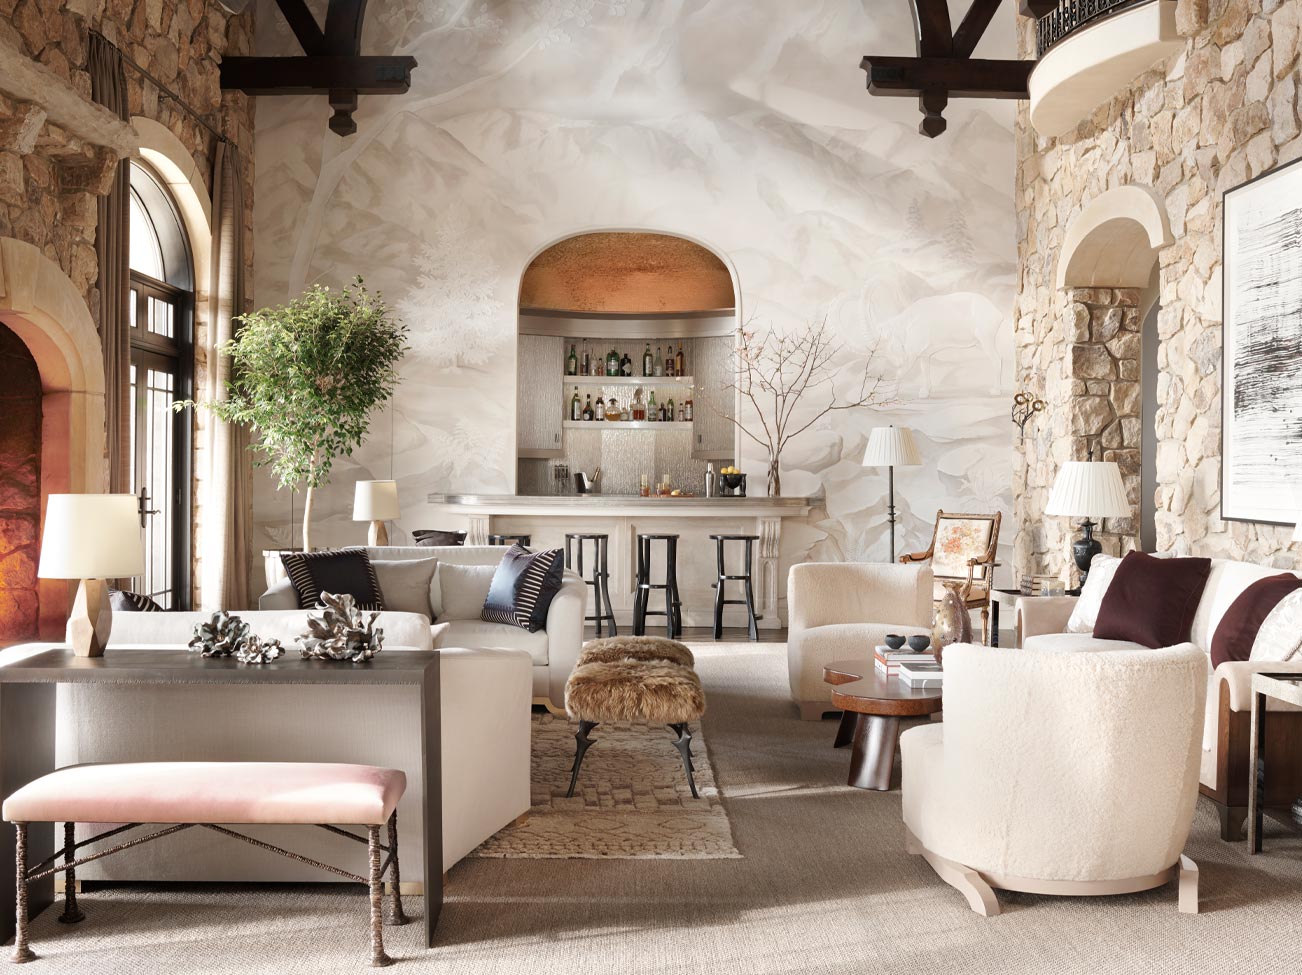 Grand salon d’inspiration espagnole avec murs et foyer en pierre, mur d’accent recouvert de stuc de finition, bar et sièges multiples de couleur blanche.